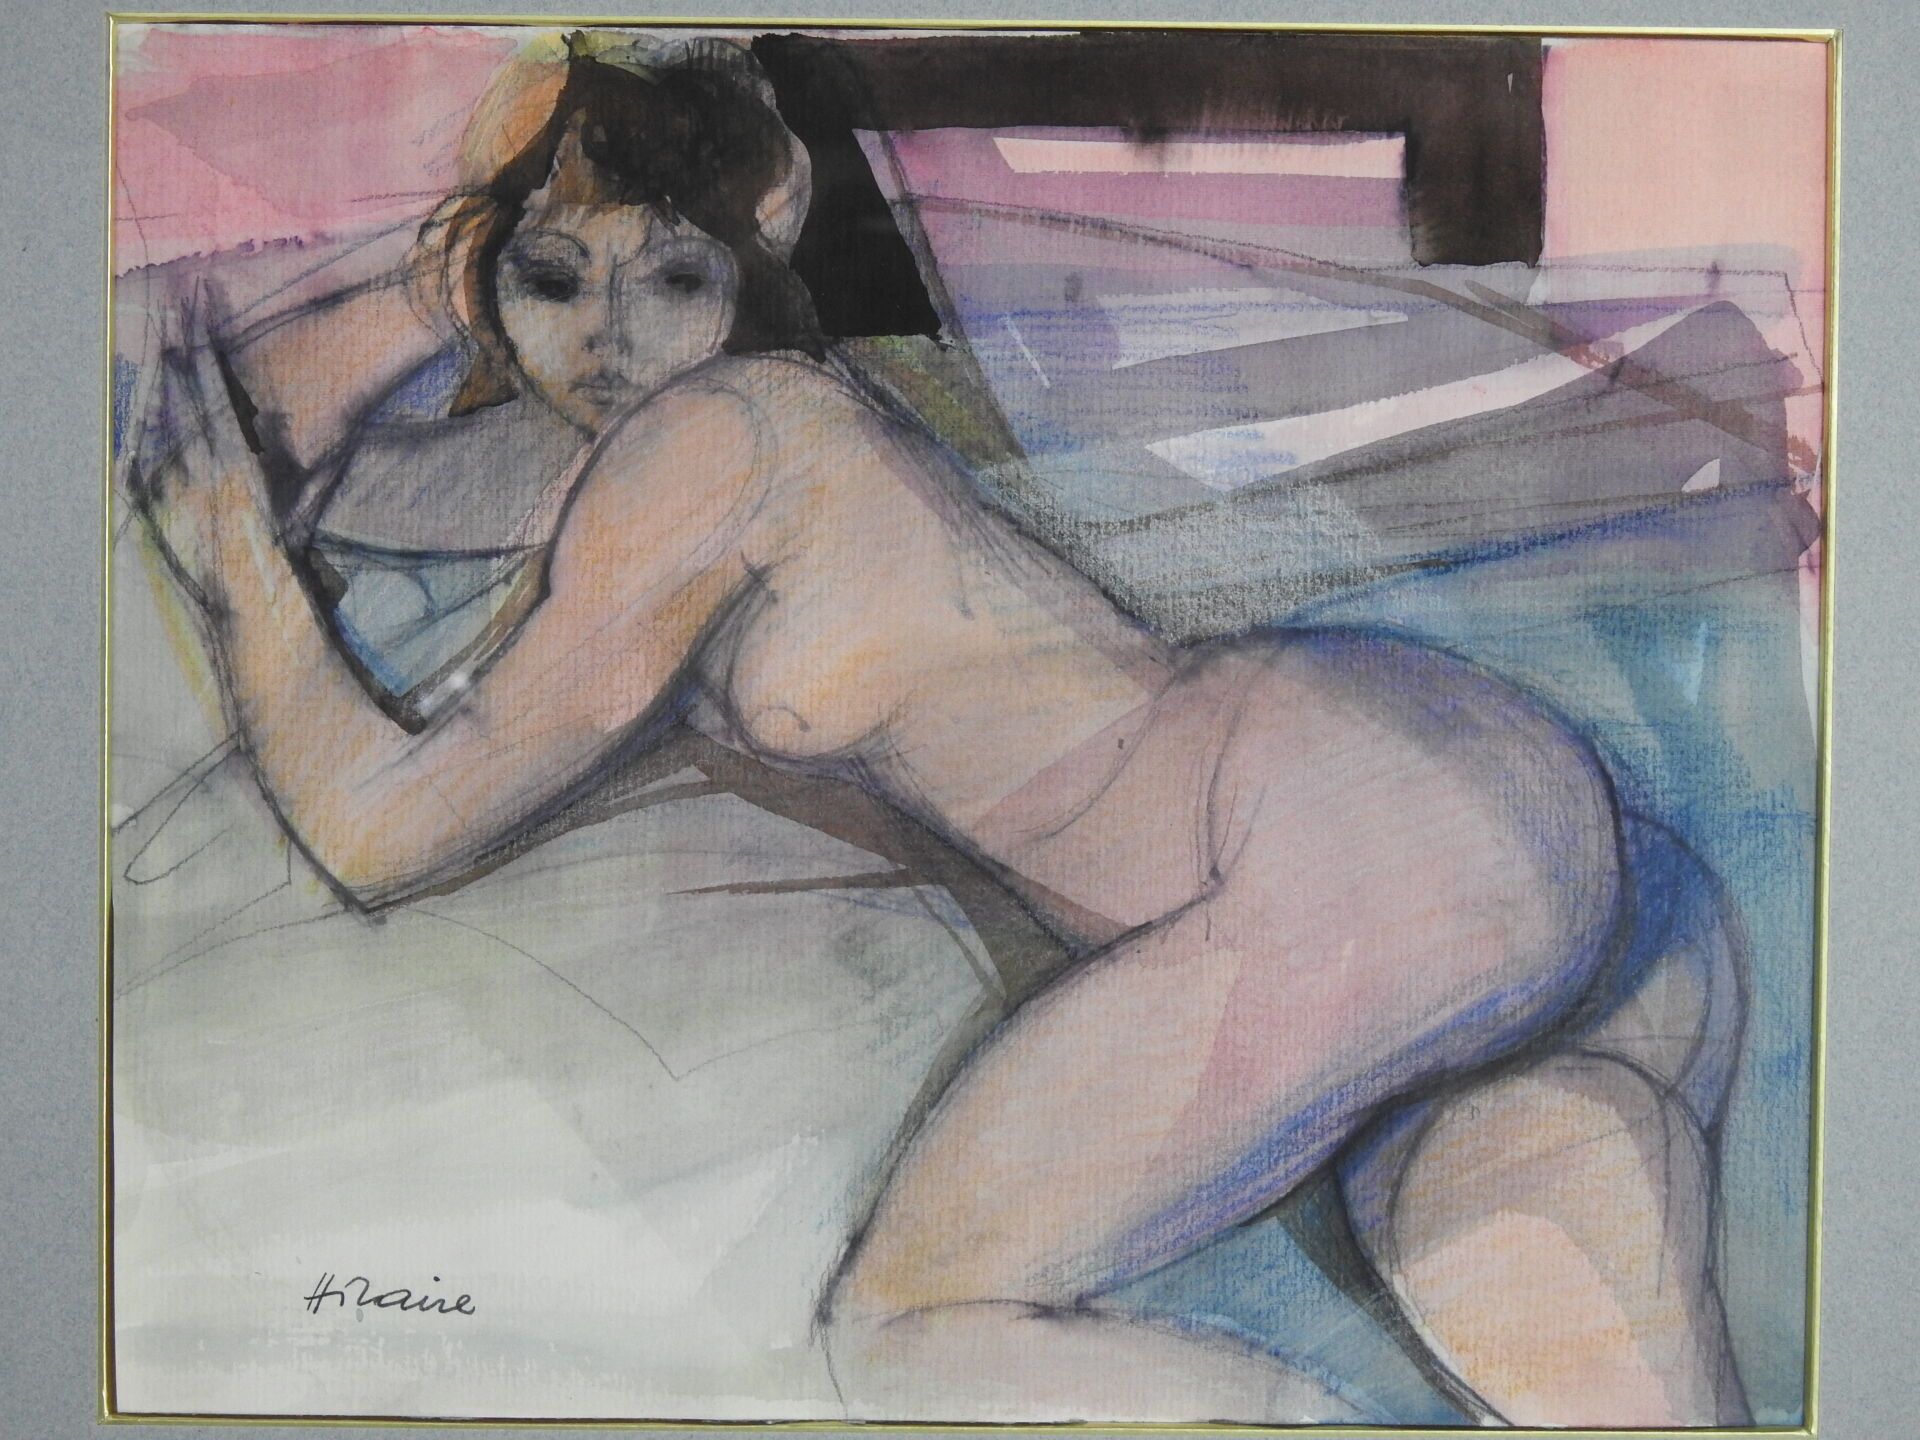 Null 卡米尔-希拉里（1916-2004）:

躺着的裸体女人。

水彩画。左下角有签名。

26 x 32 厘米。

出处：65画廊，戛纳。